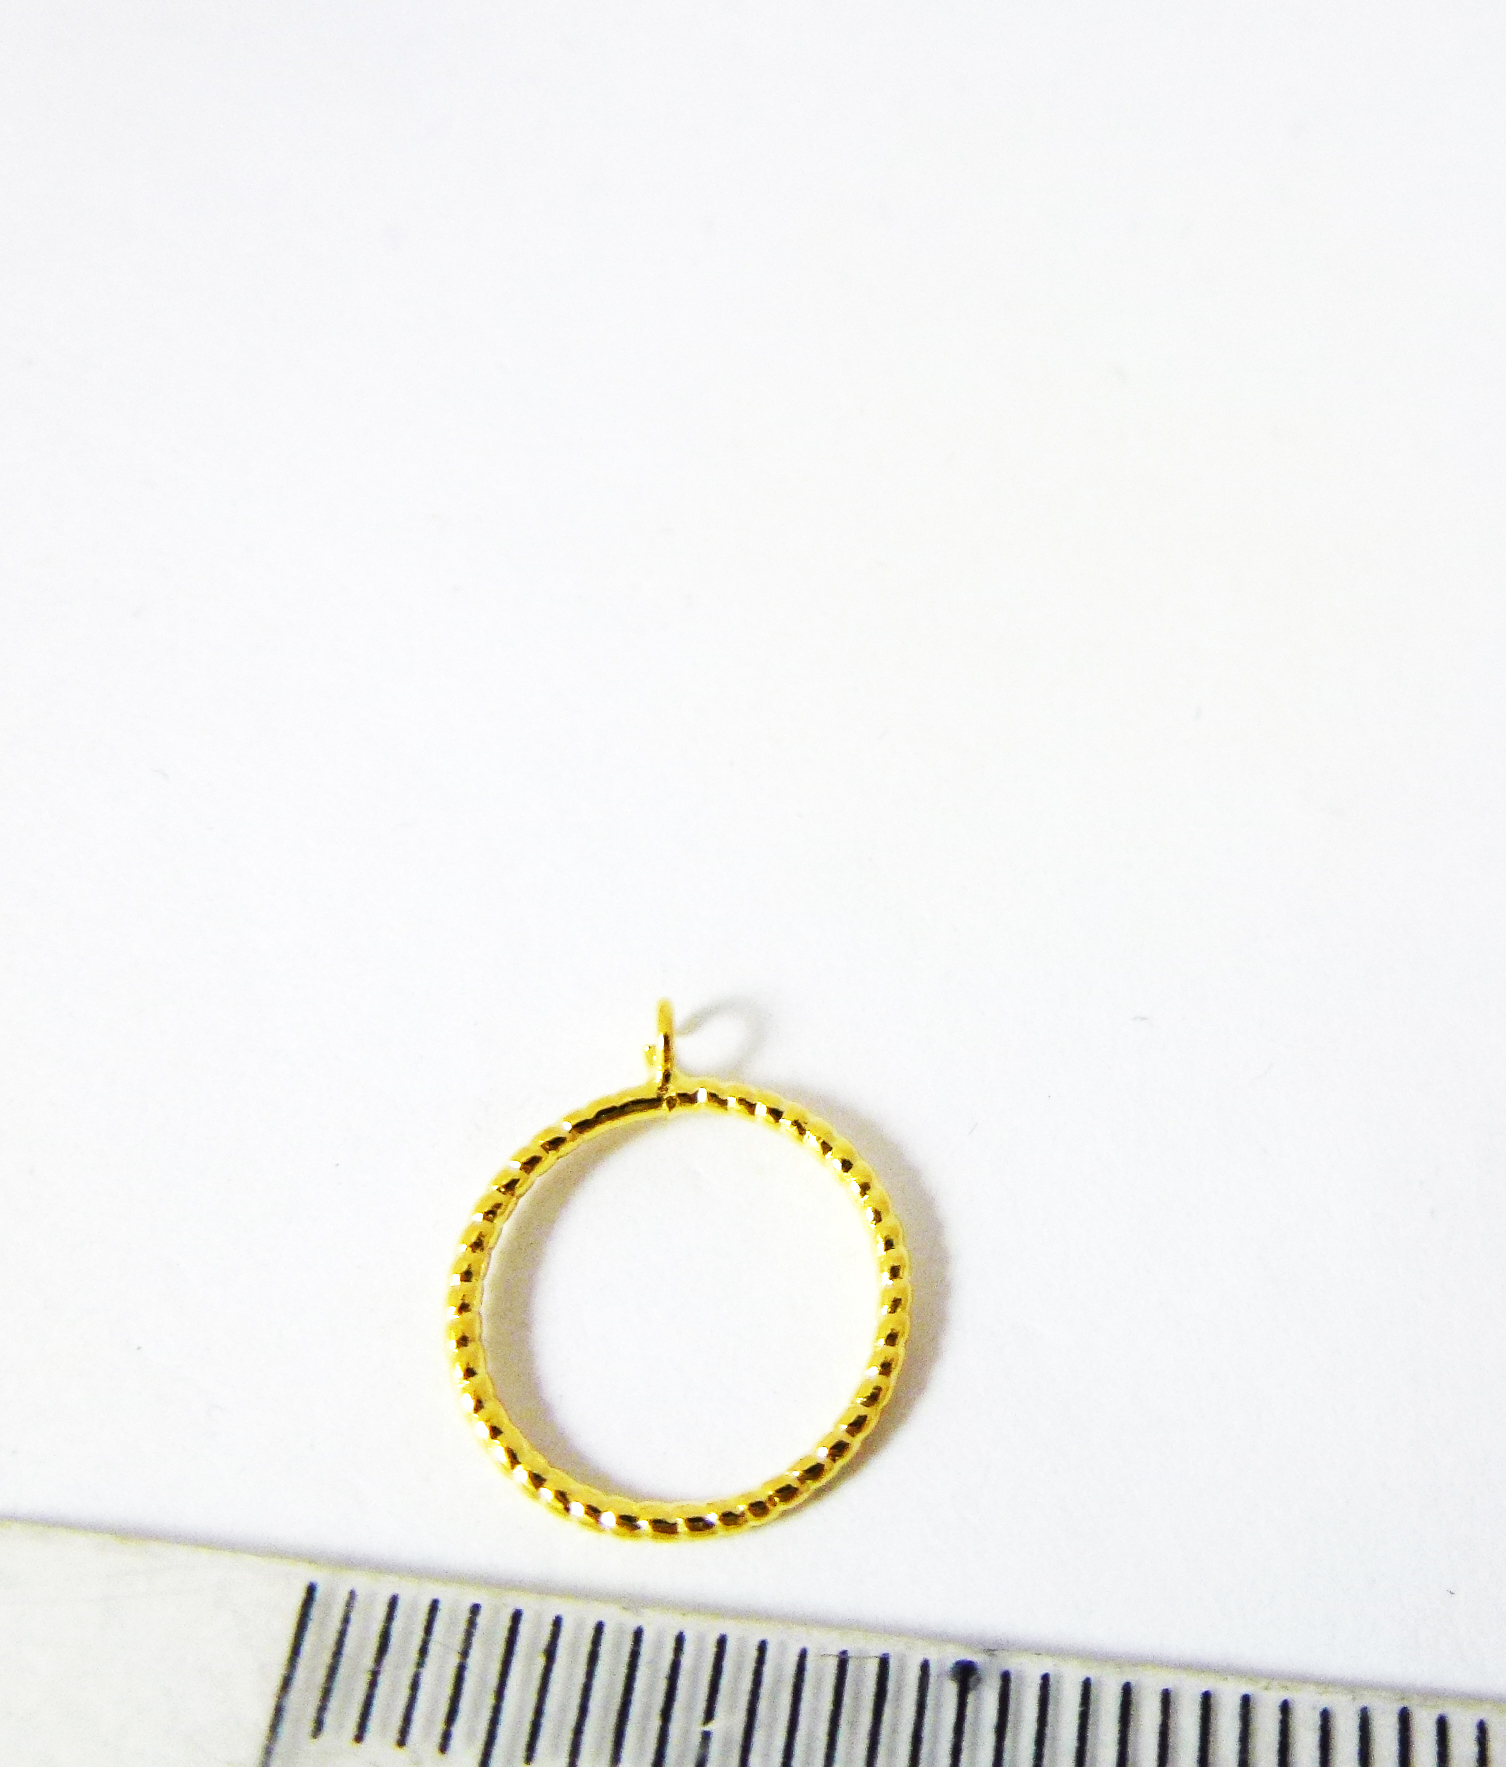 12mm銅鍍金色單孔螺紋圓圈